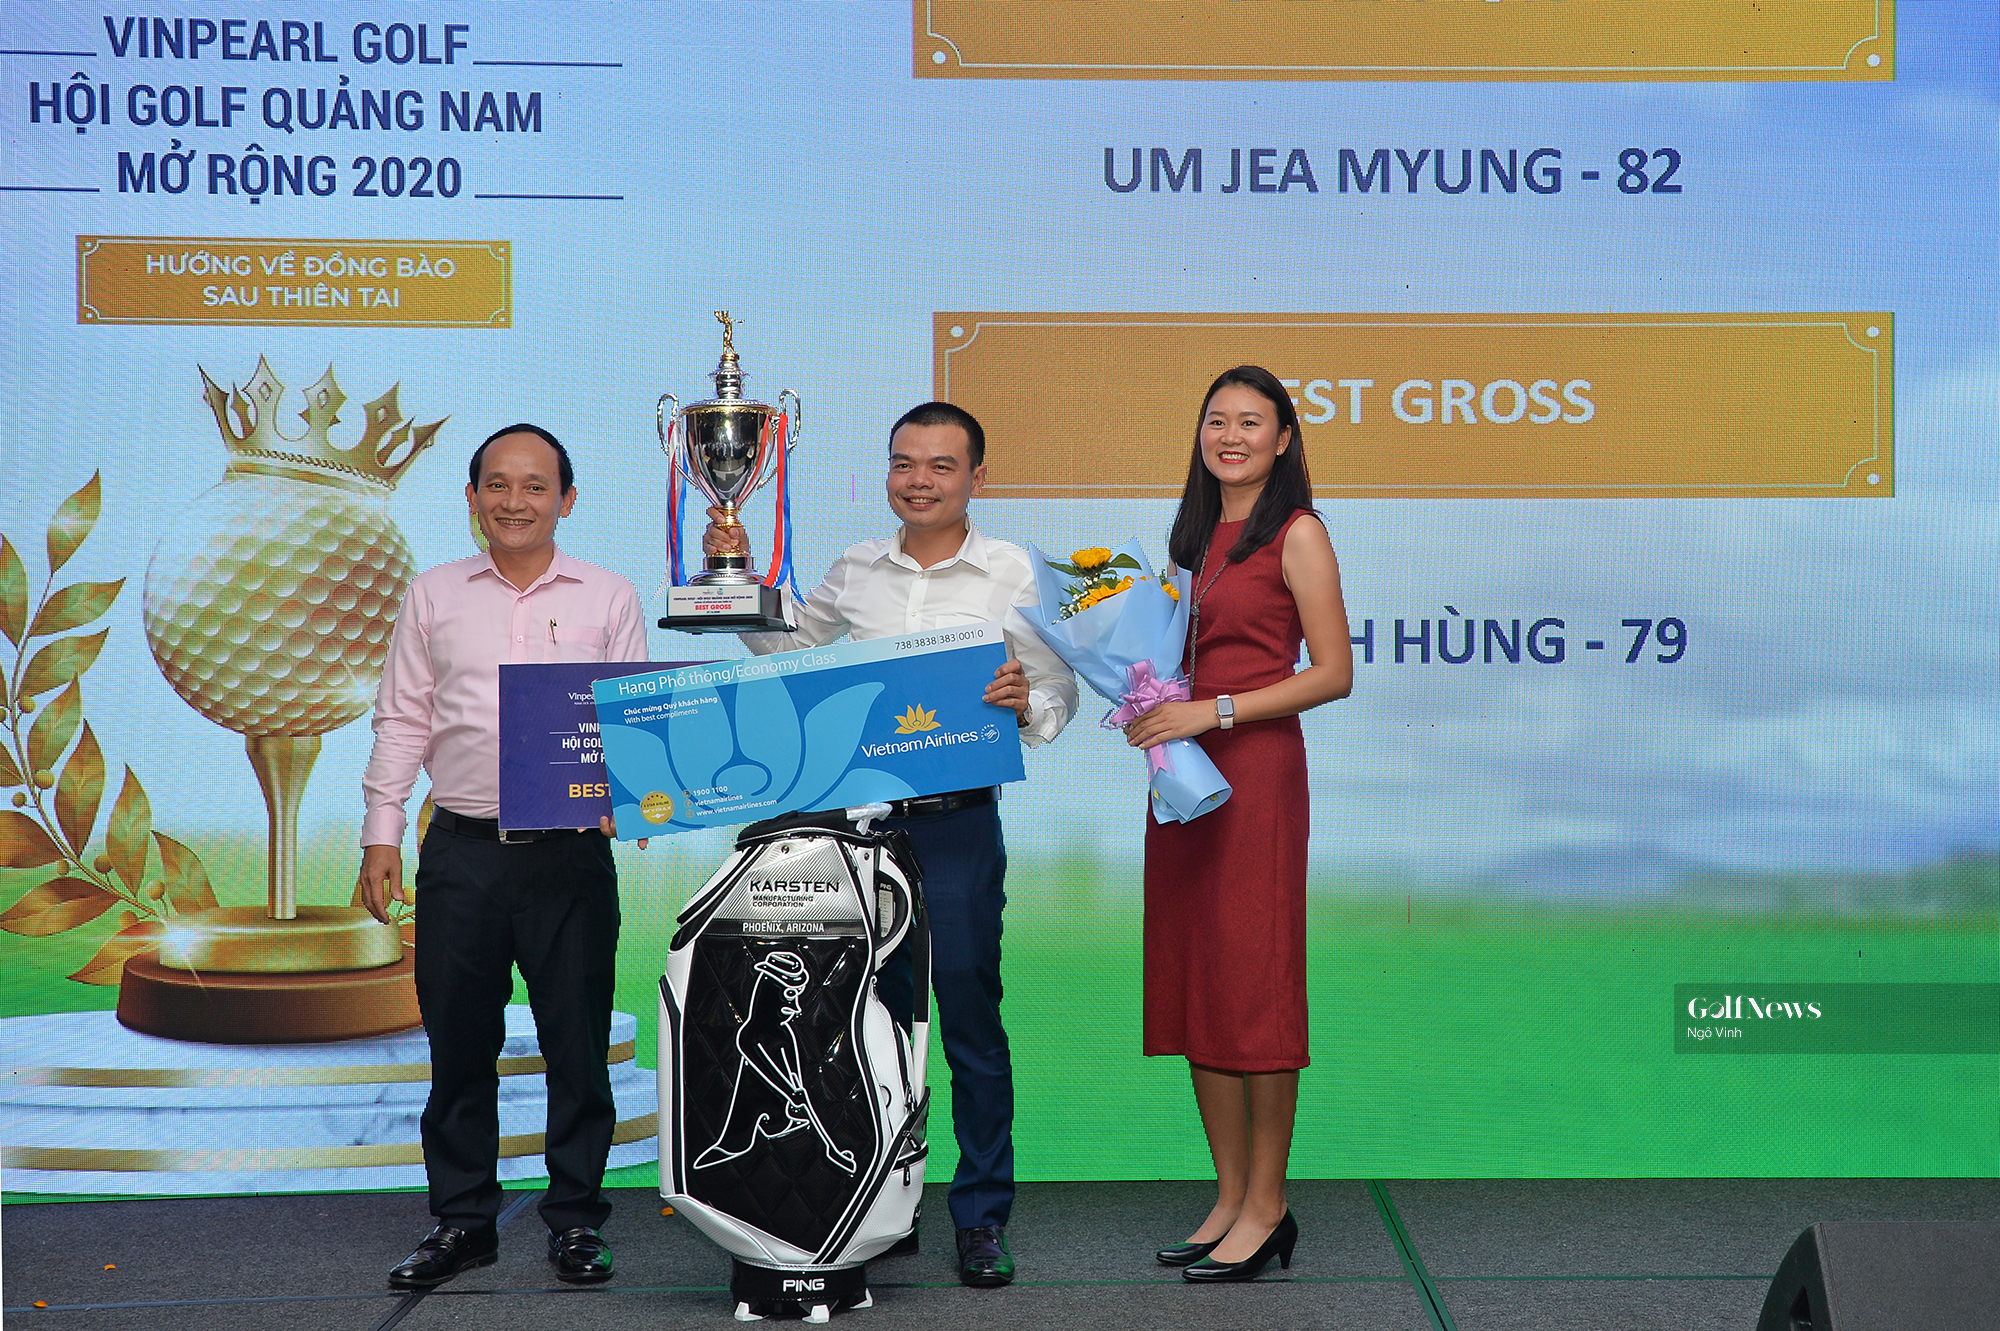 Giải Vinpearl Golf – Hội Golf Quảng Nam mở rộng 2020: Gần 700 triệu đồng quyên góp cho miền Trung